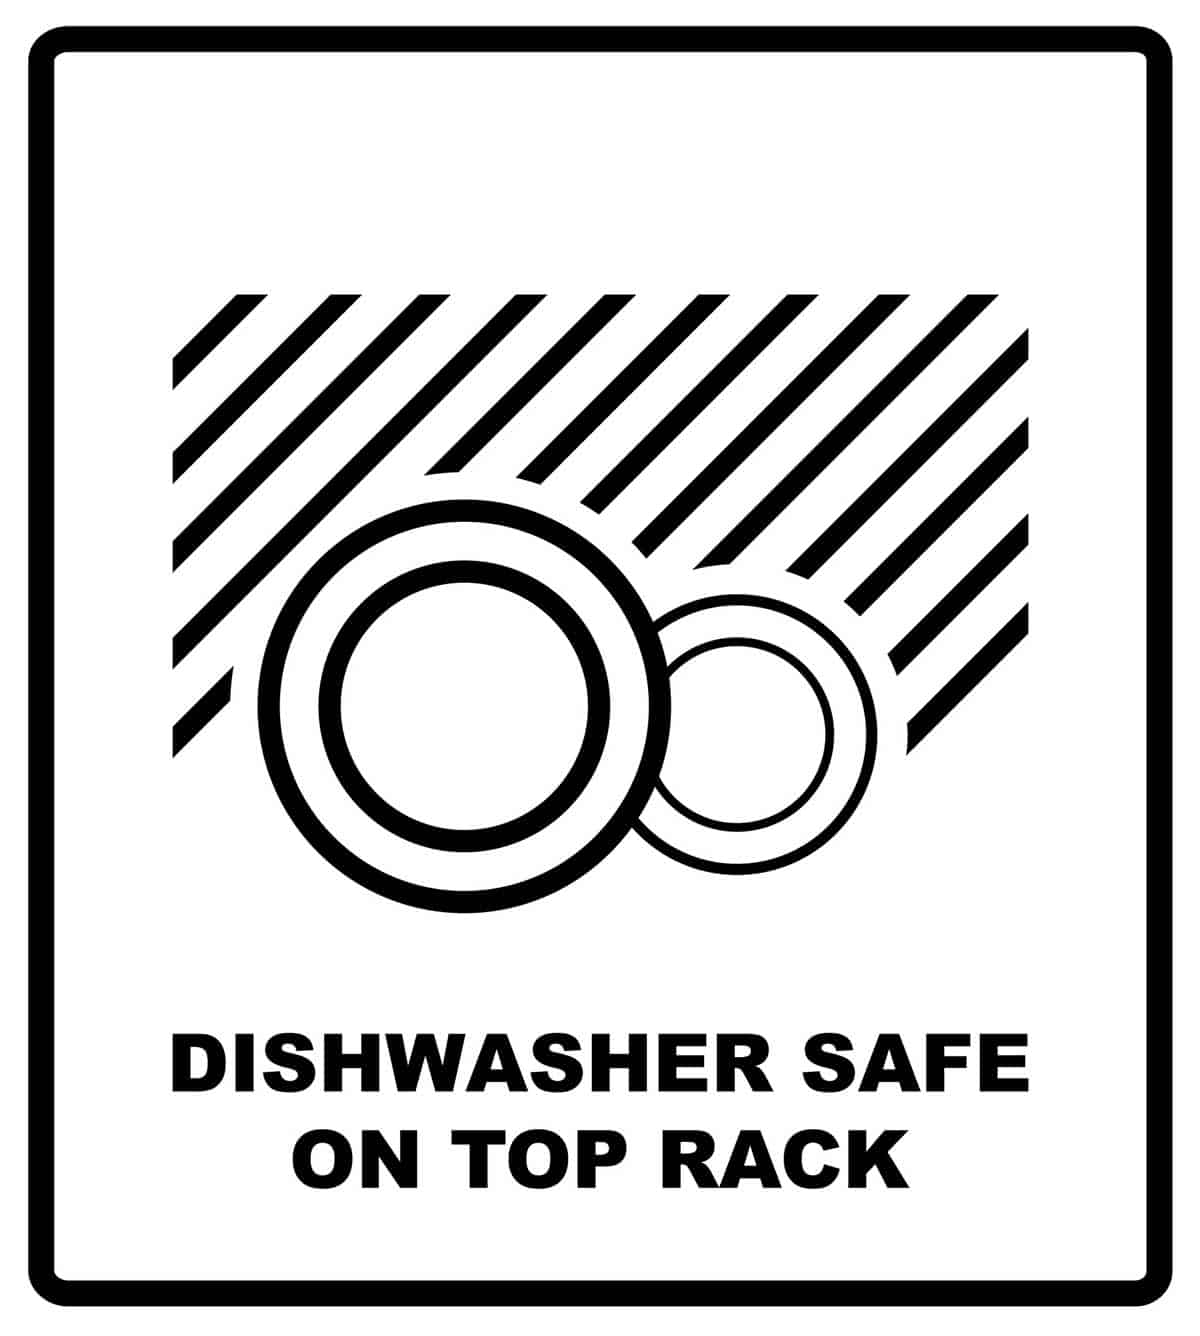 Dishwasher safe on top rack symbol